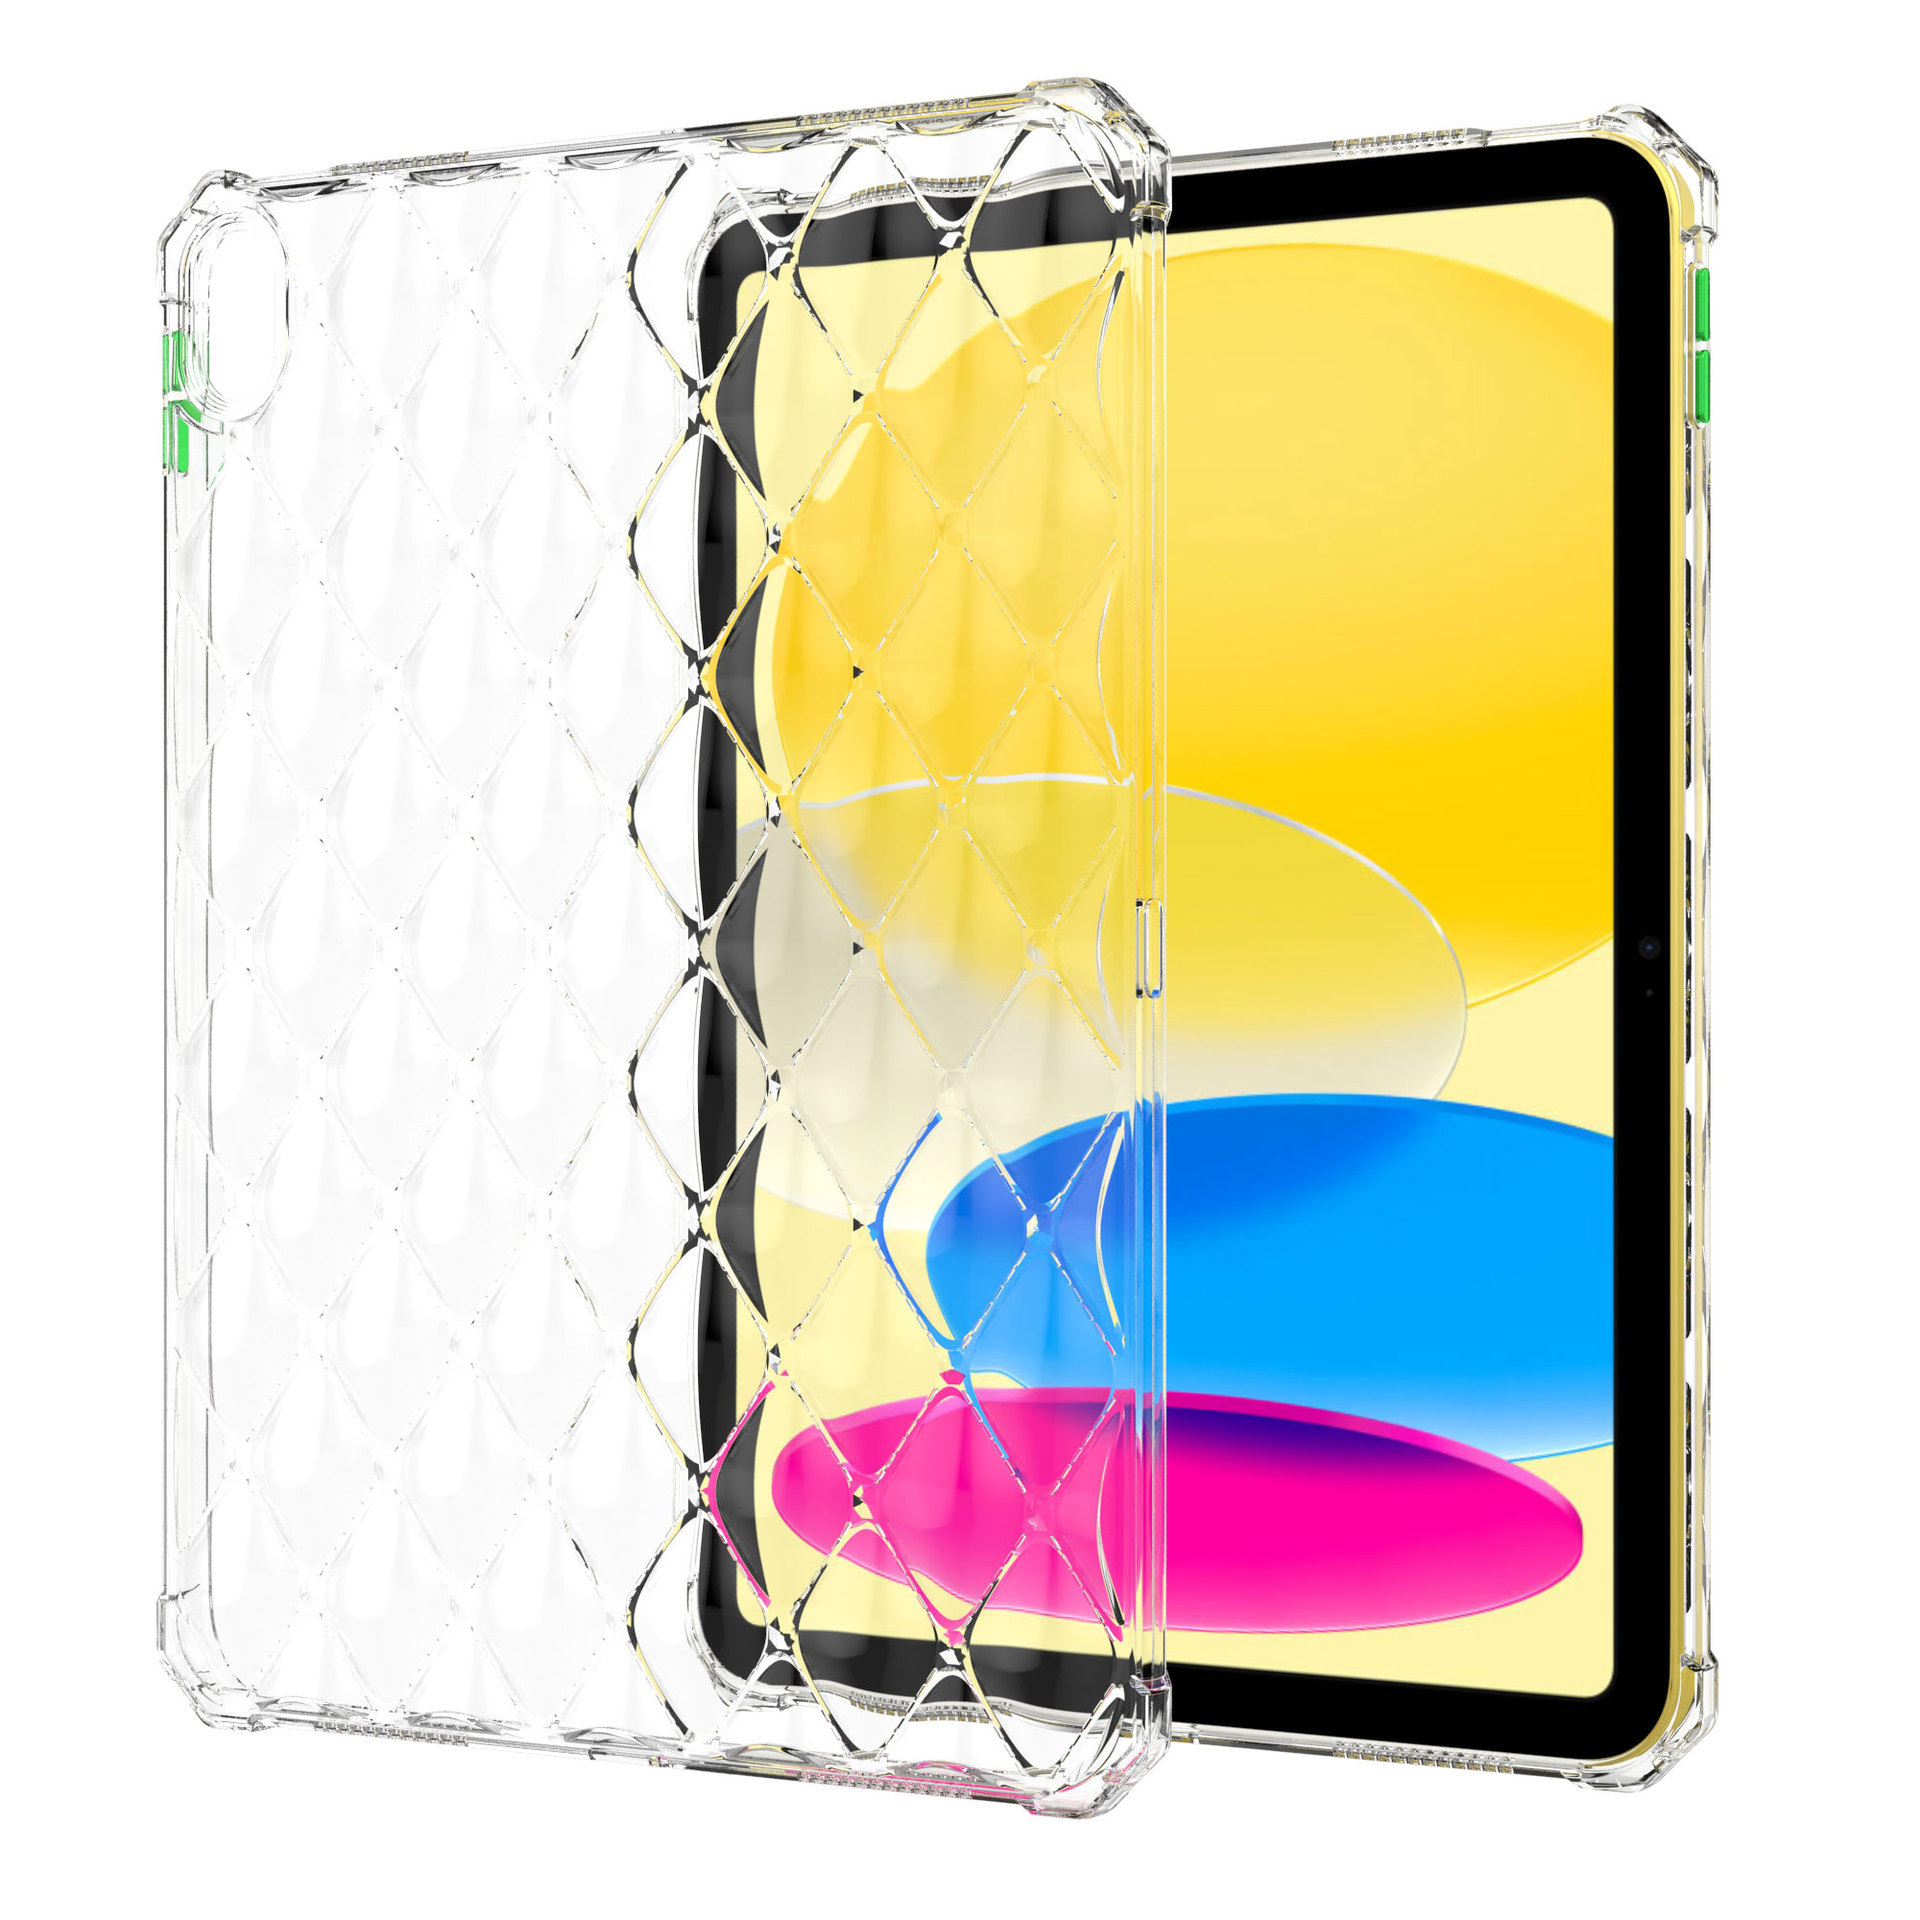 Ốp lưng chống sốc đệm khí trong suốt cho iPad Pro 11 12.9 / Air 1 2 4 5 / Mini 4 5 6 / 10.2 / Pro 10.5 / 9.7 hiệu HOTCASE Diamond chống chịu va đập cực tốt, độ trong suốt chuẩn HD, mặt lưng 3D siêu đẹp - Hàng nhập khẩu